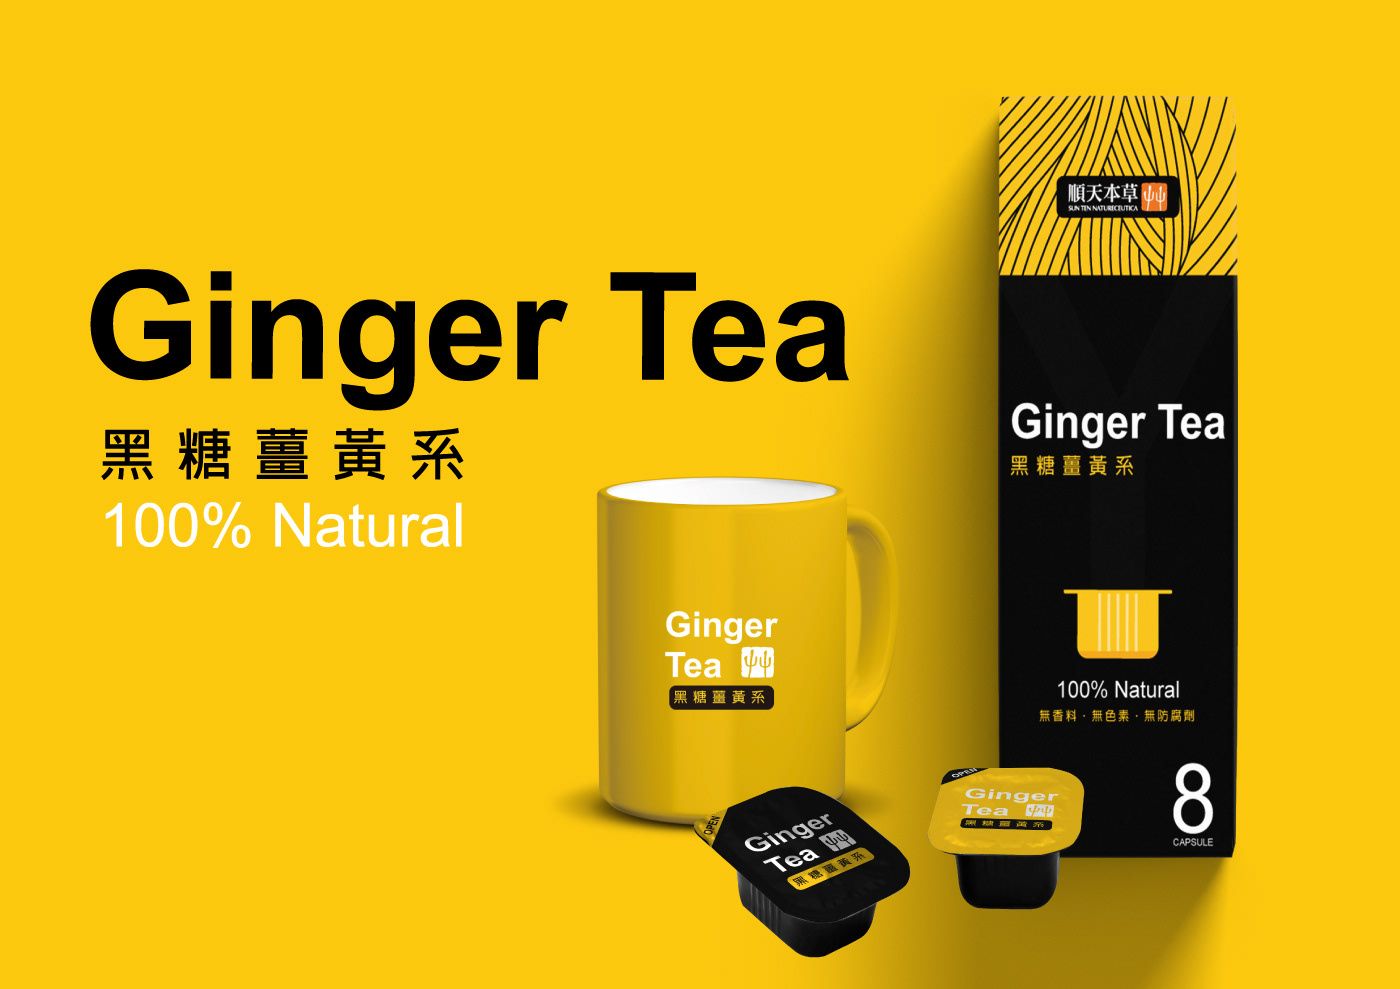 包裝設計 capsule TEA healthy food Herb herb tea natural tea